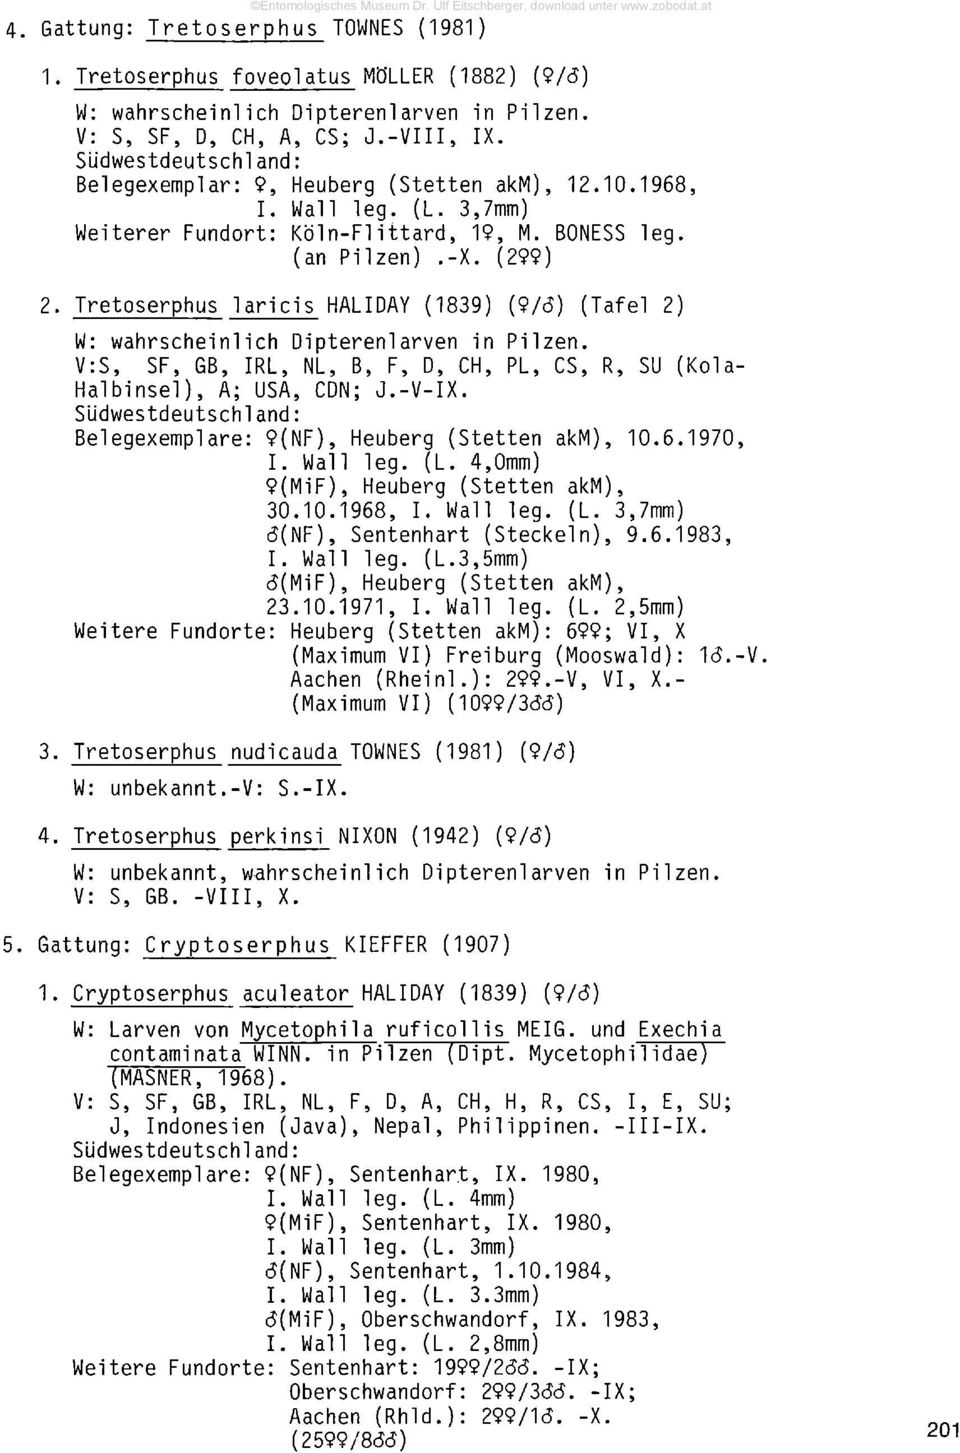 Tretoserphus laricis HALIDAY (1839) {9/6) (Tafel 2) W: wahrscheinlich Dipterenlarven in Pilzen. V:S, SF, GB, IRL, NL, B, F, D, CH, PL, CS, R, SU (Kola- Halbinsel), A; USA, CDN; J.-V-IX.